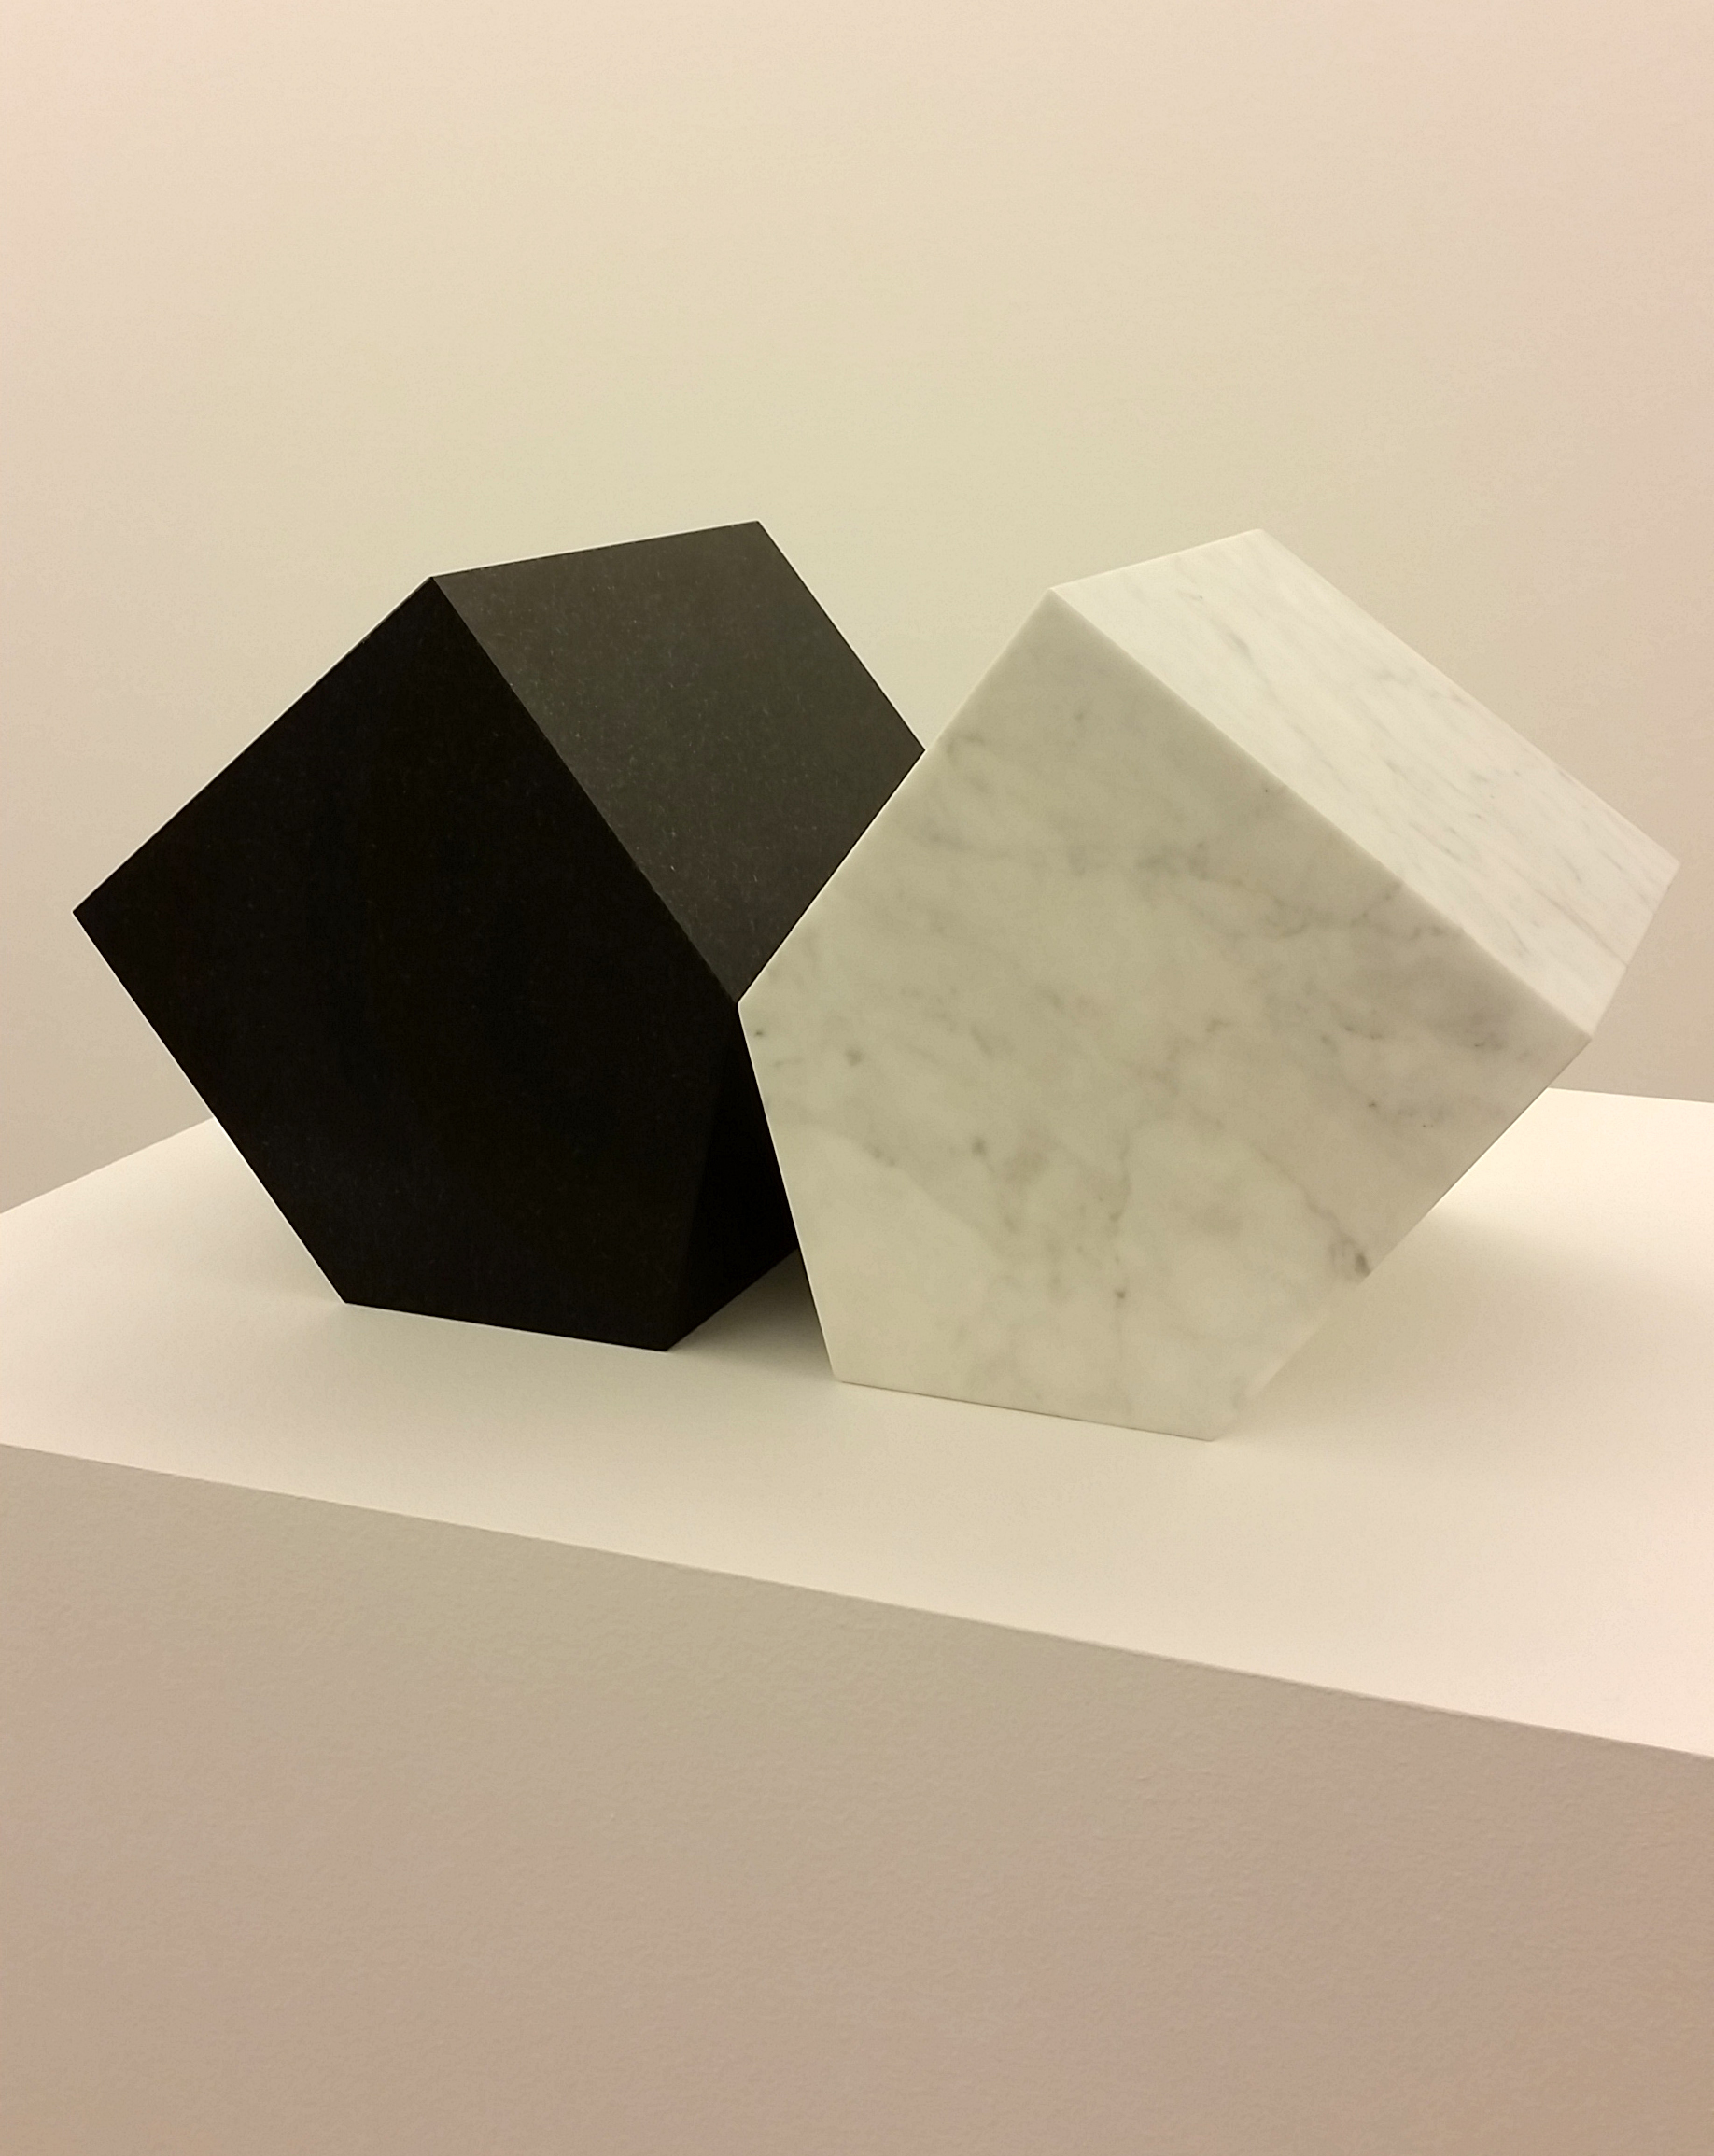 Hushåll (2014), diabas och marmor, 45x19x17cm). ©Hillevi Berglund / Bildupphovsrätt (2017).